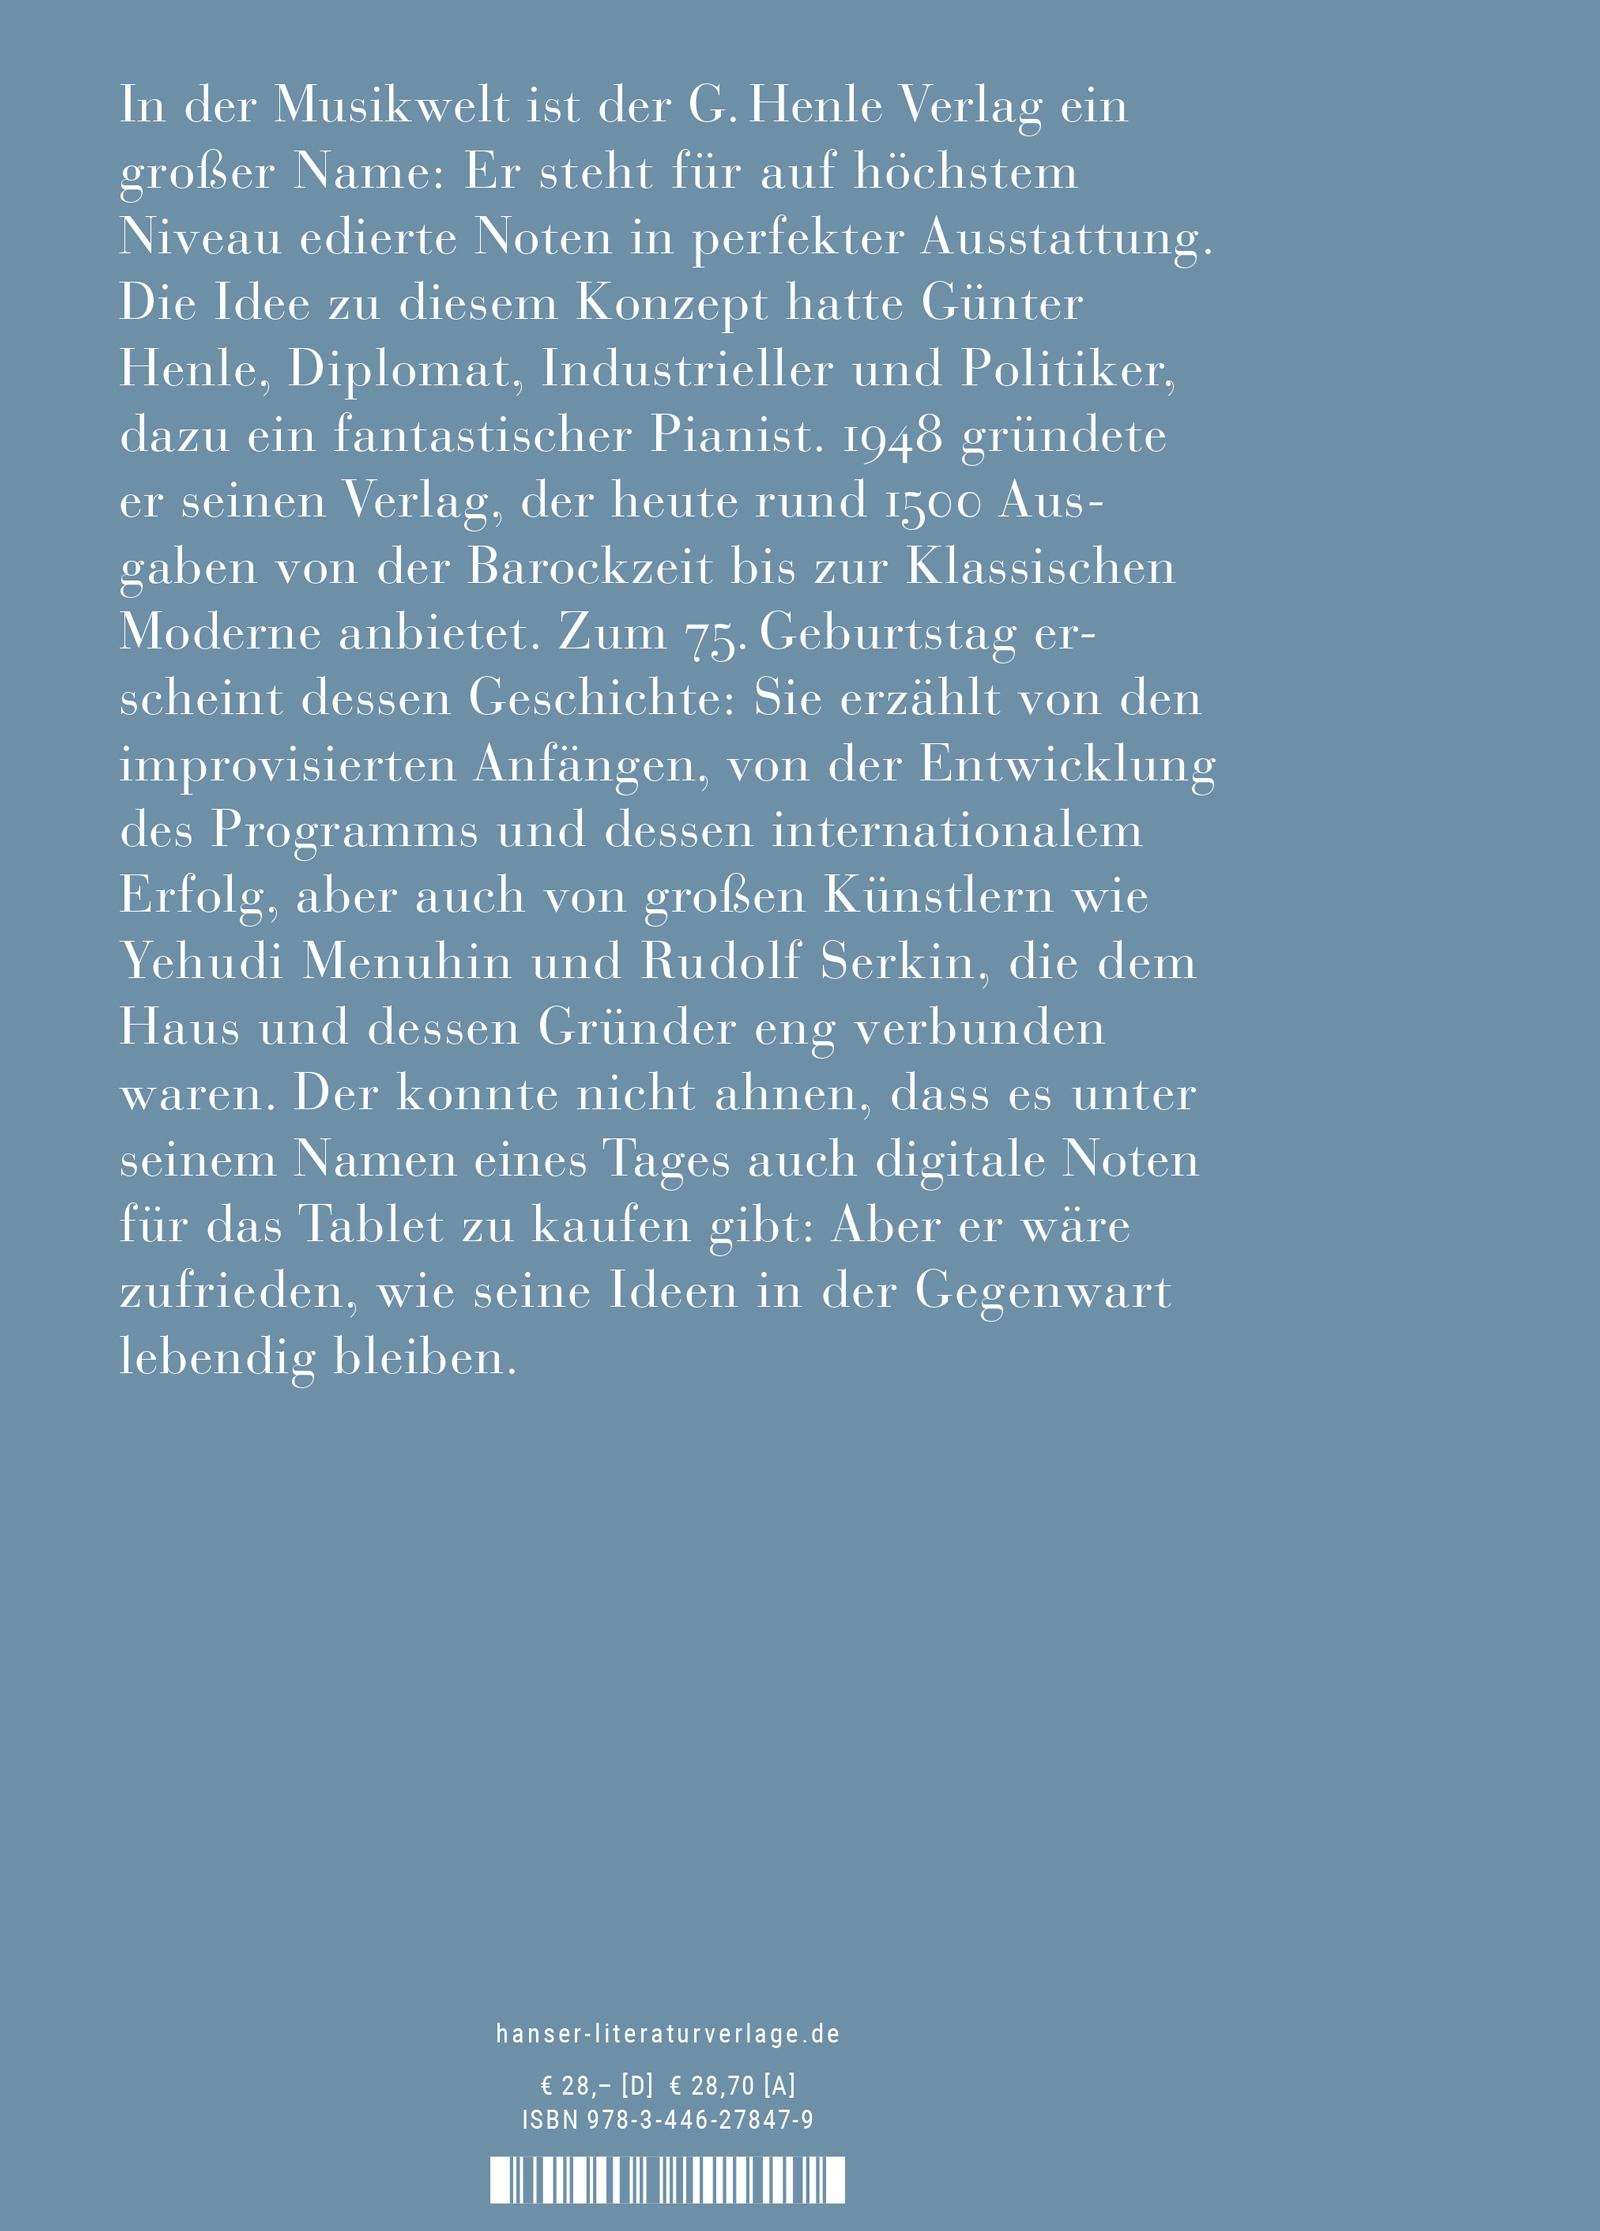 75 Jahre G. Henle Verlag